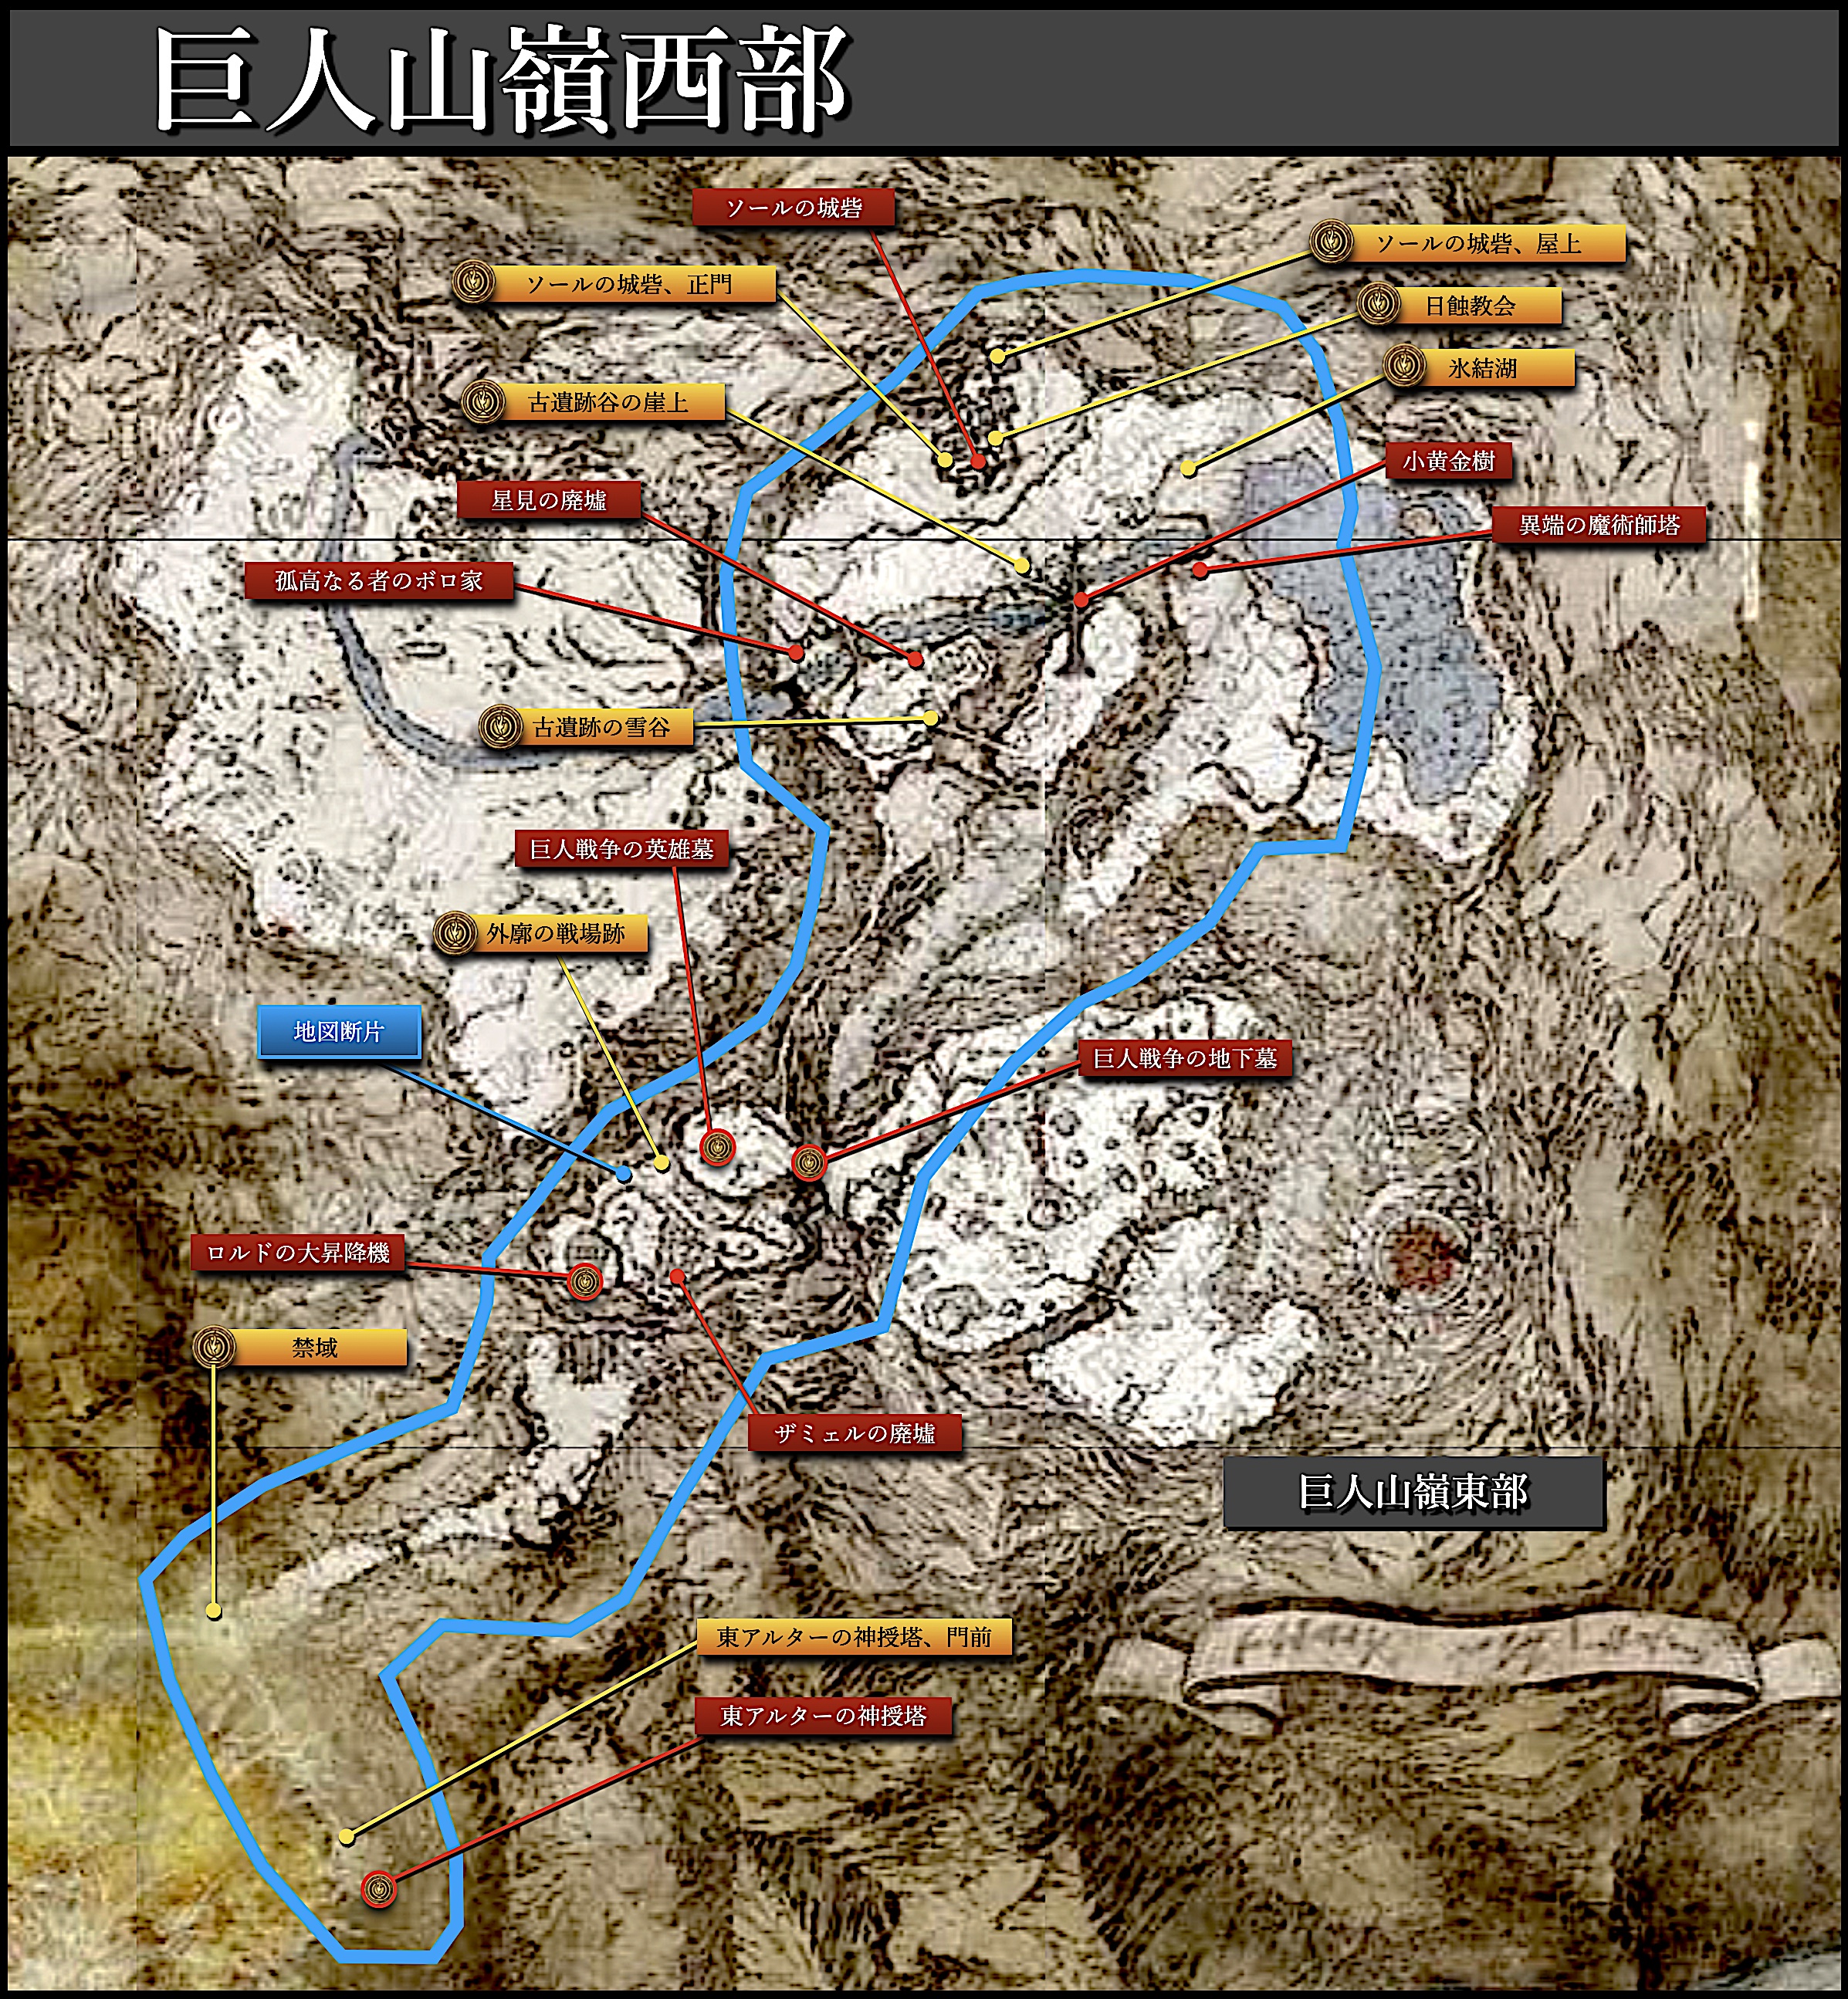 eldenring-giants-west-map-2300px